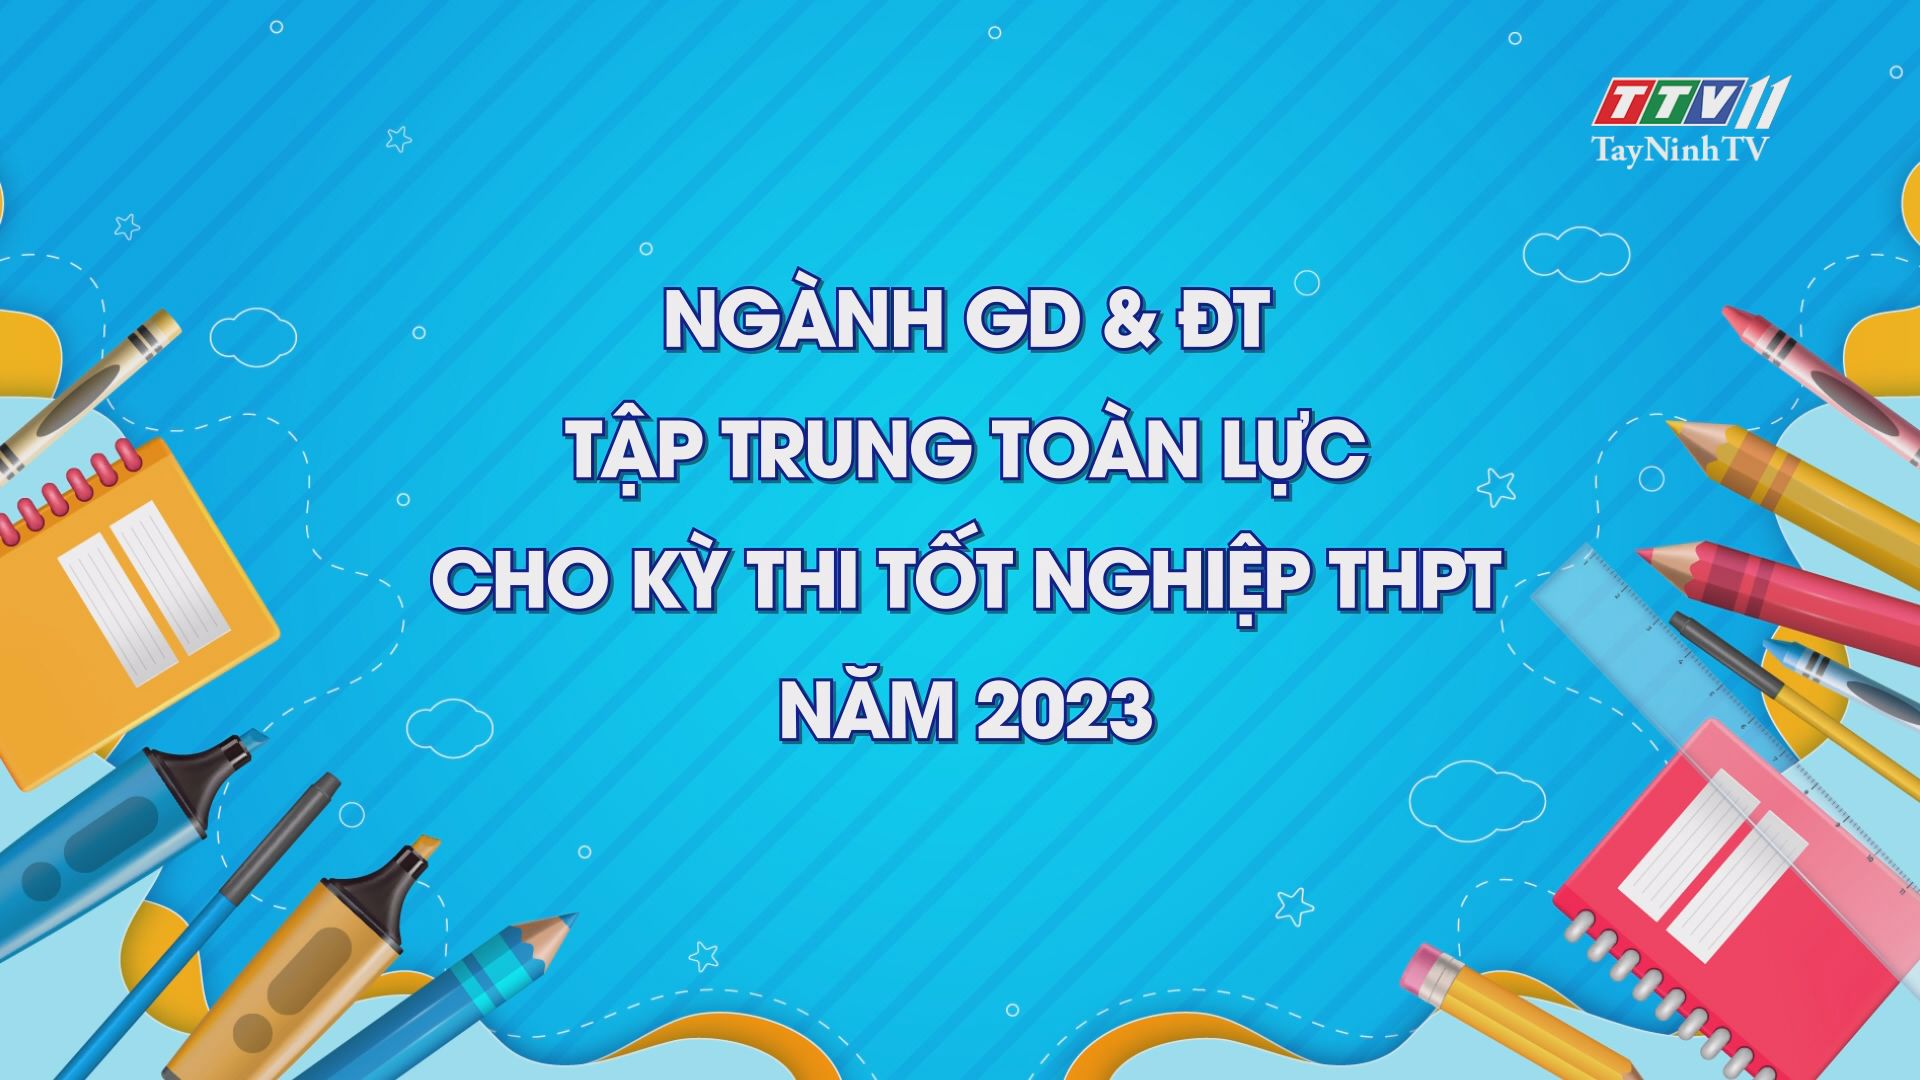 Ngành GD & ĐT tập trung toàn lực cho kỳ thi tốt nghiệp THPT năm 2023 | Giáo dục và đào tạo | TayNinhTV